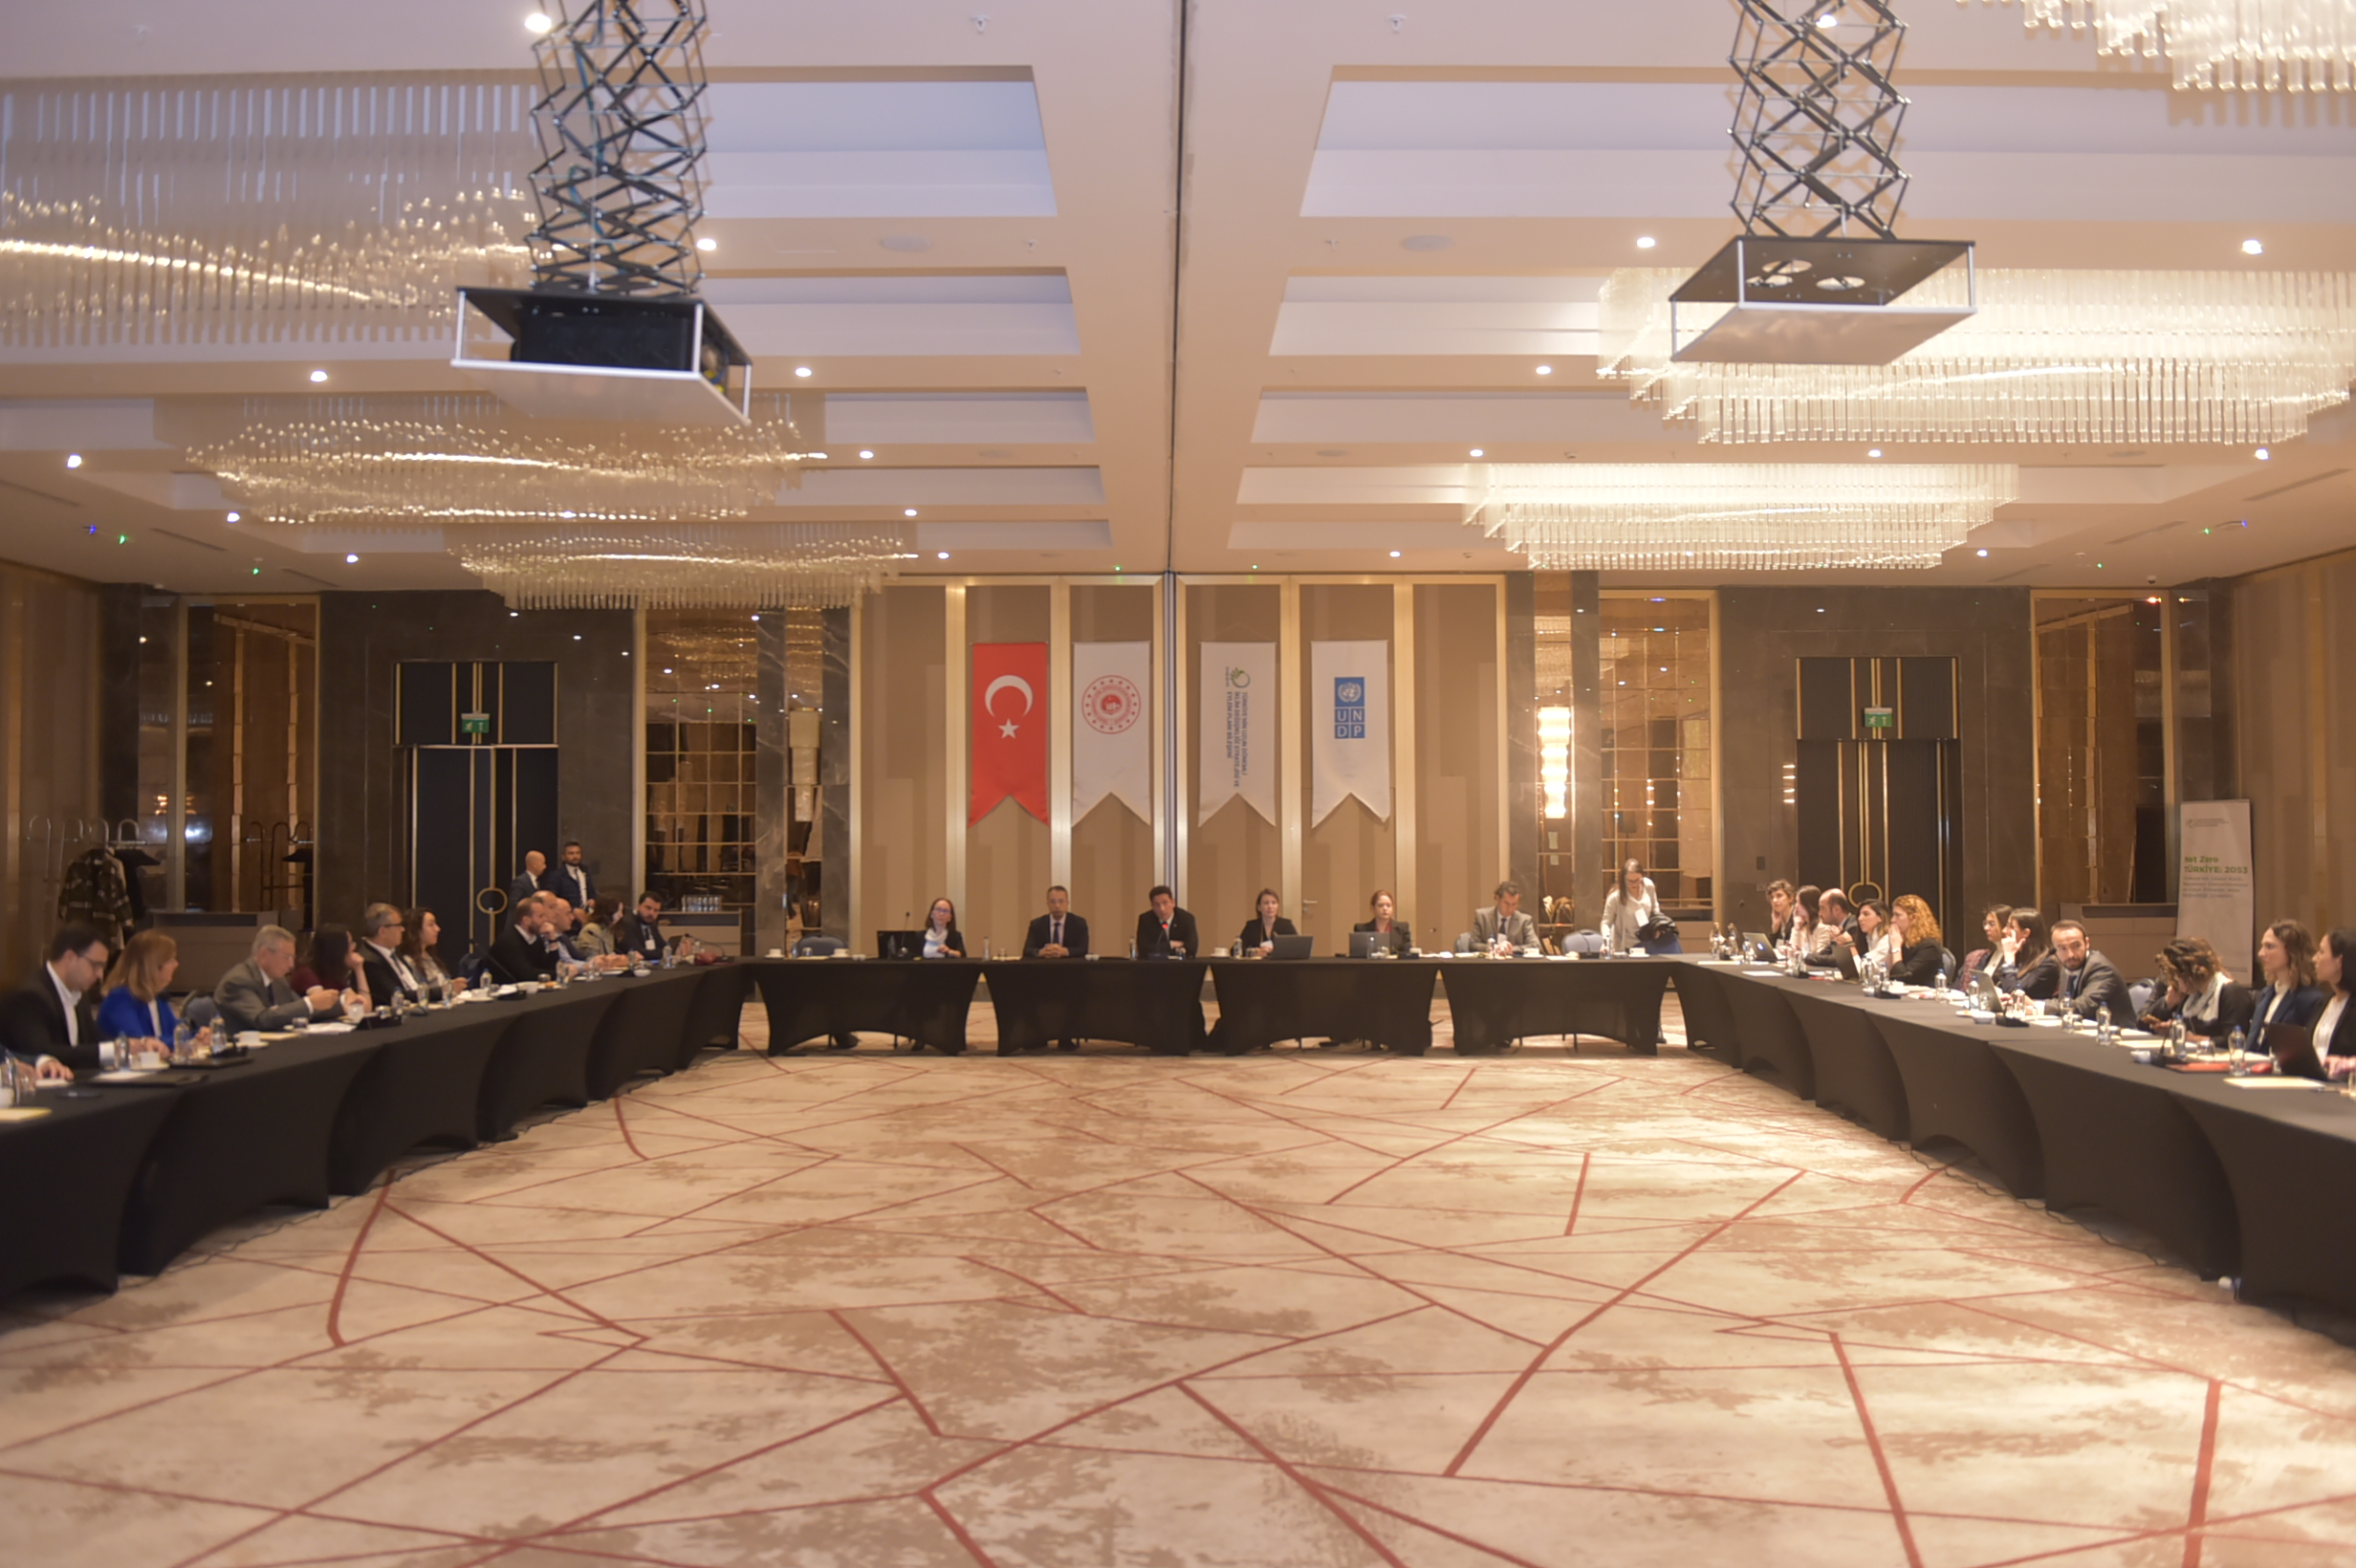 Türkiye’nin Ulusal Katkı Beyanının Güncellenmesi ve Uzun Dönemli İklim Değişikliği Stratejisi Paydaş Toplantısı Gerçekleştirildi